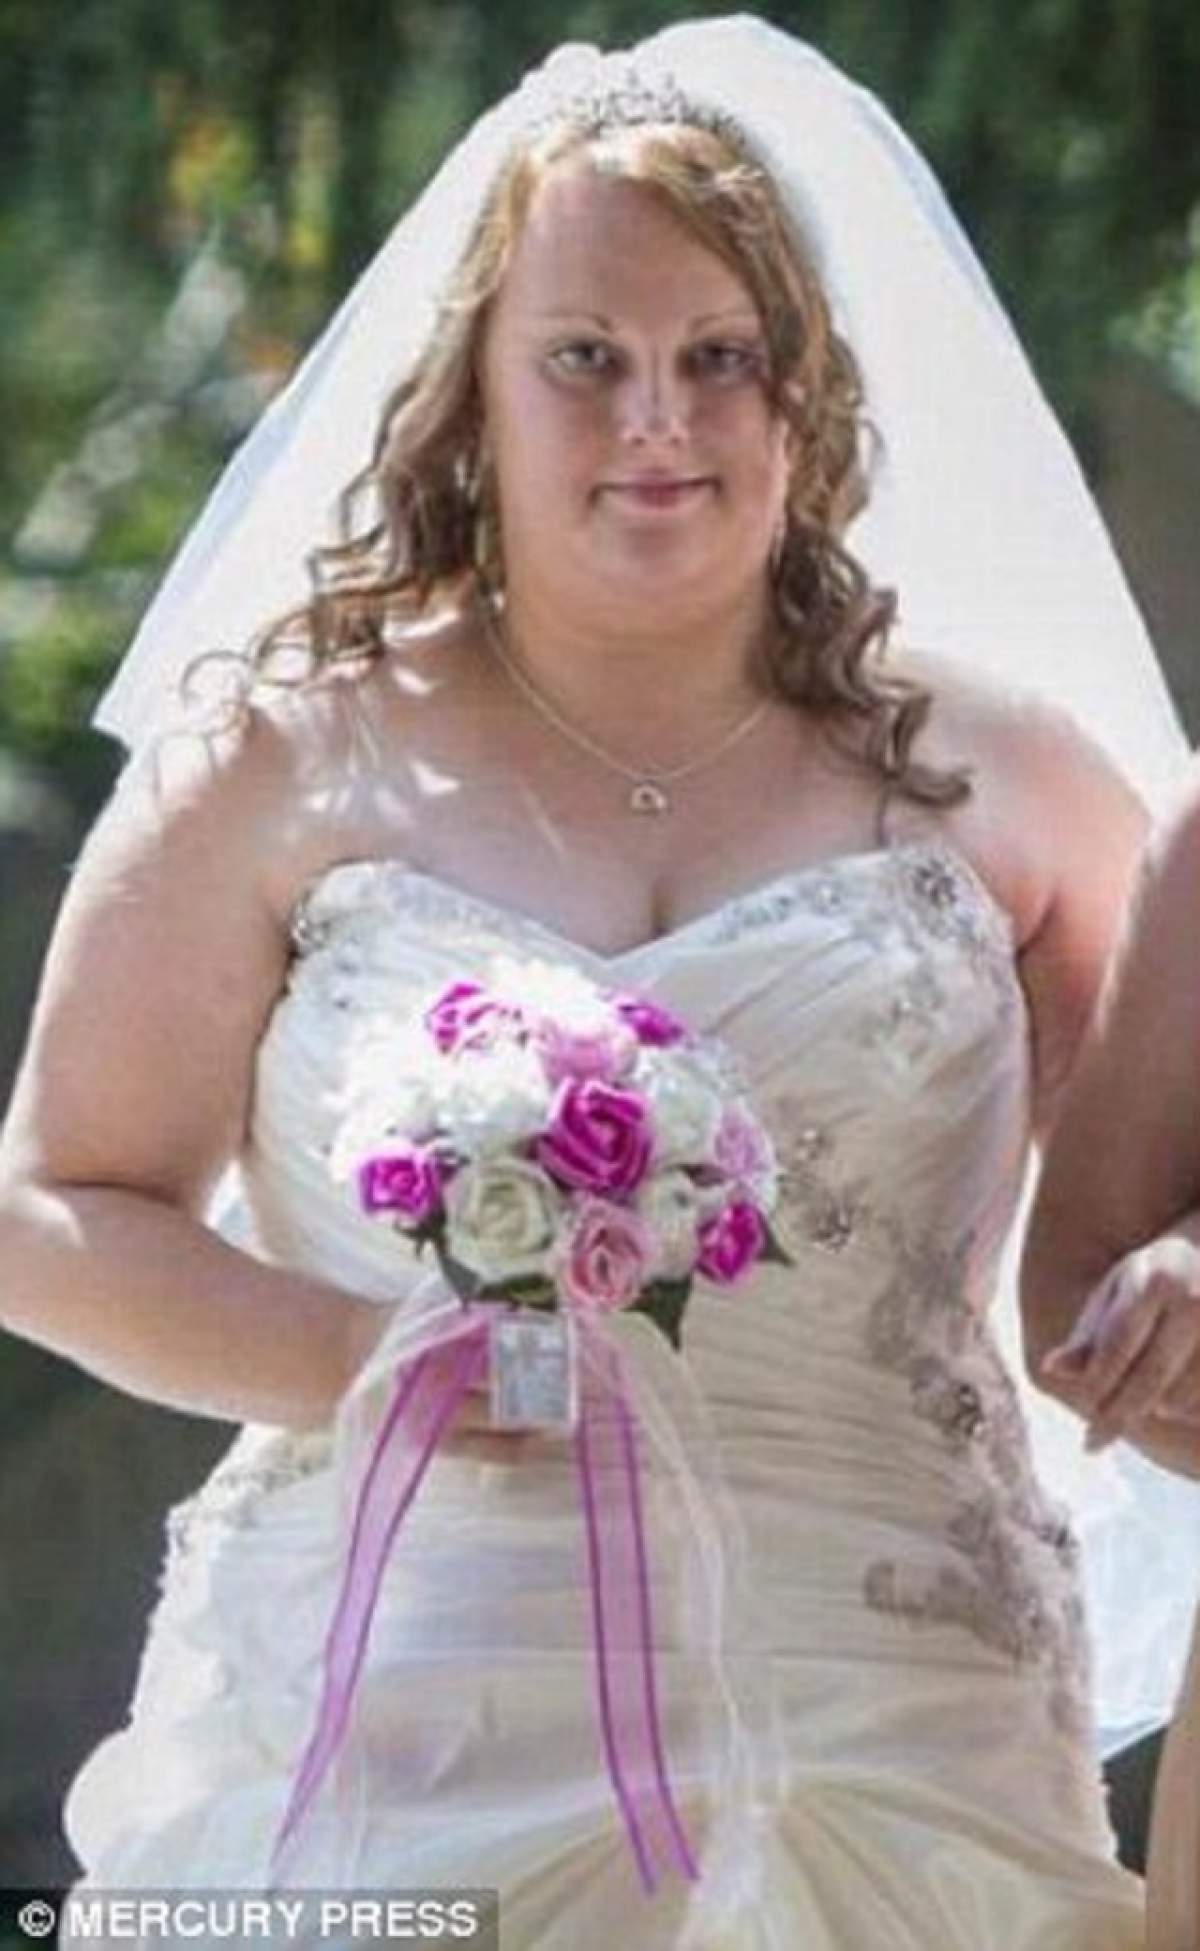 Era obeză la nuntă, dar s-a înjumătăţit. Cum arată după ce a slăbit 45 de kilograme, îmbrăcată în aceeaşi rochie de mireasă